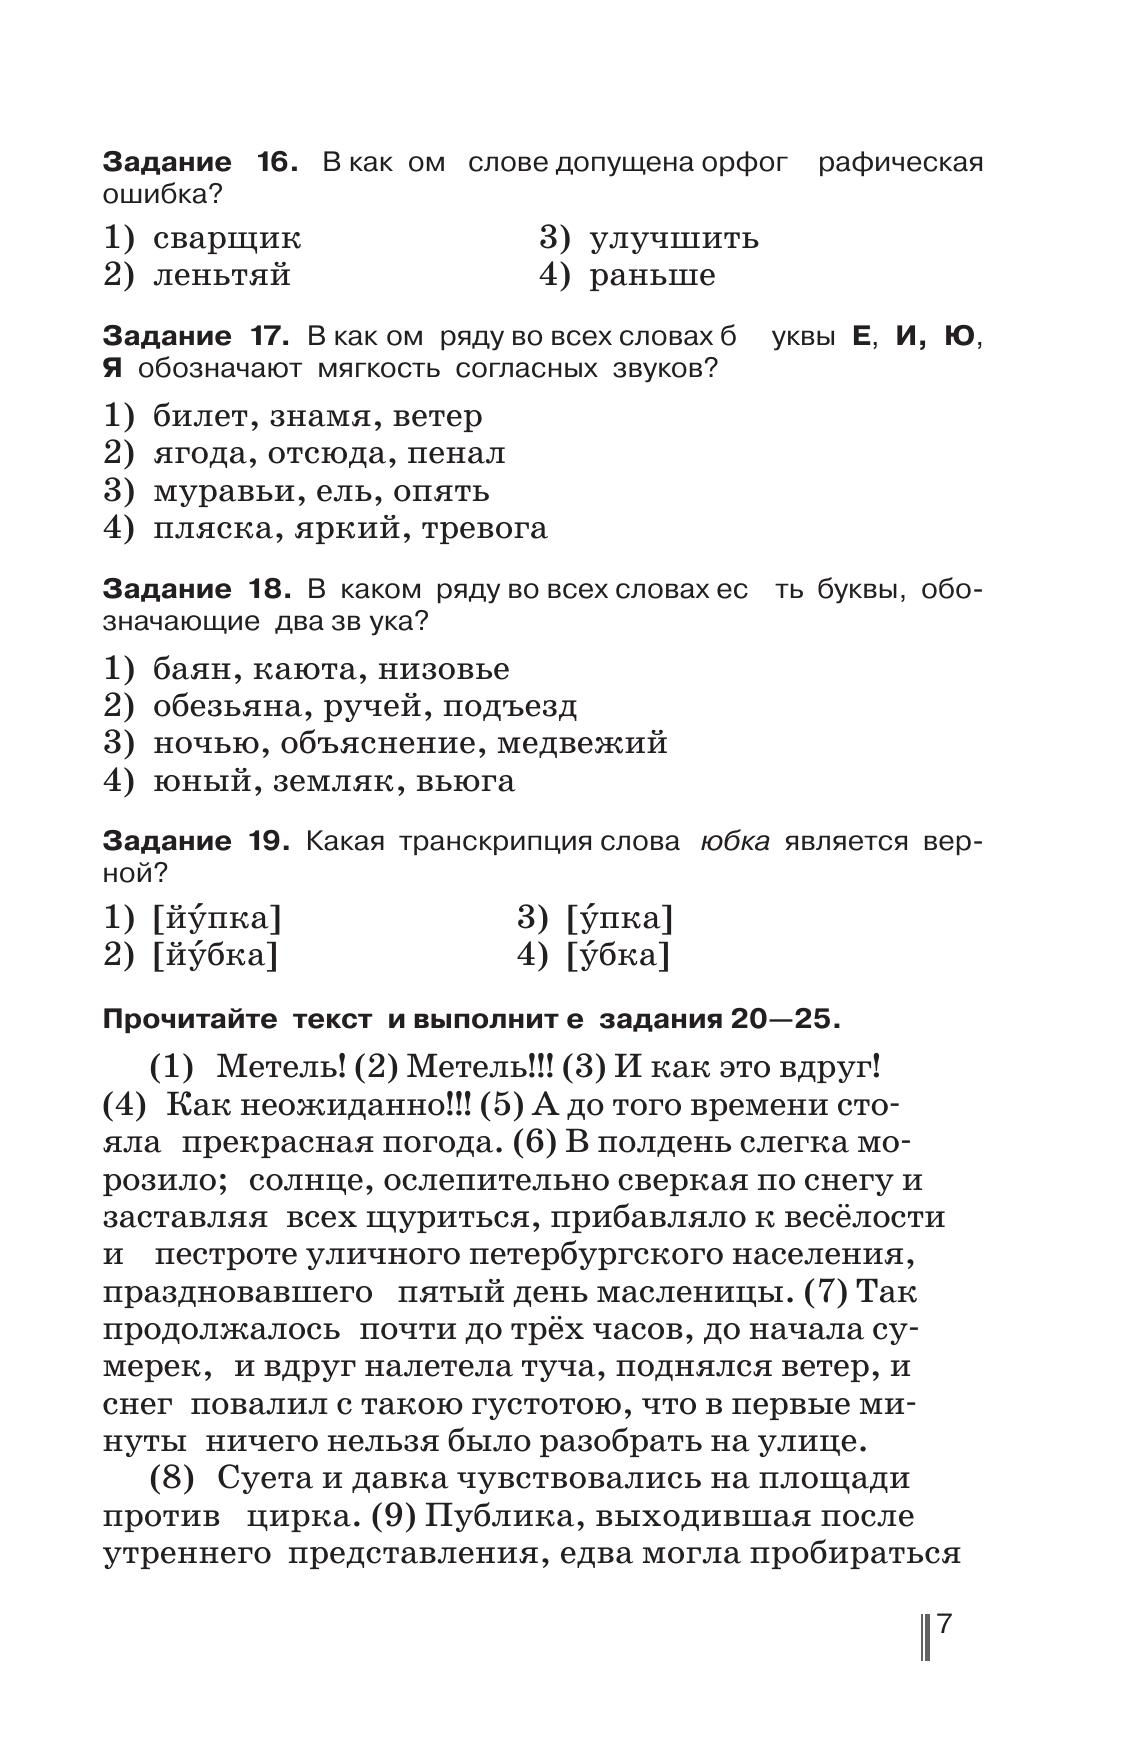 Русский язык. Готовимся к ГИА. Тесты, творческие работы, проекты. 5 класс 11